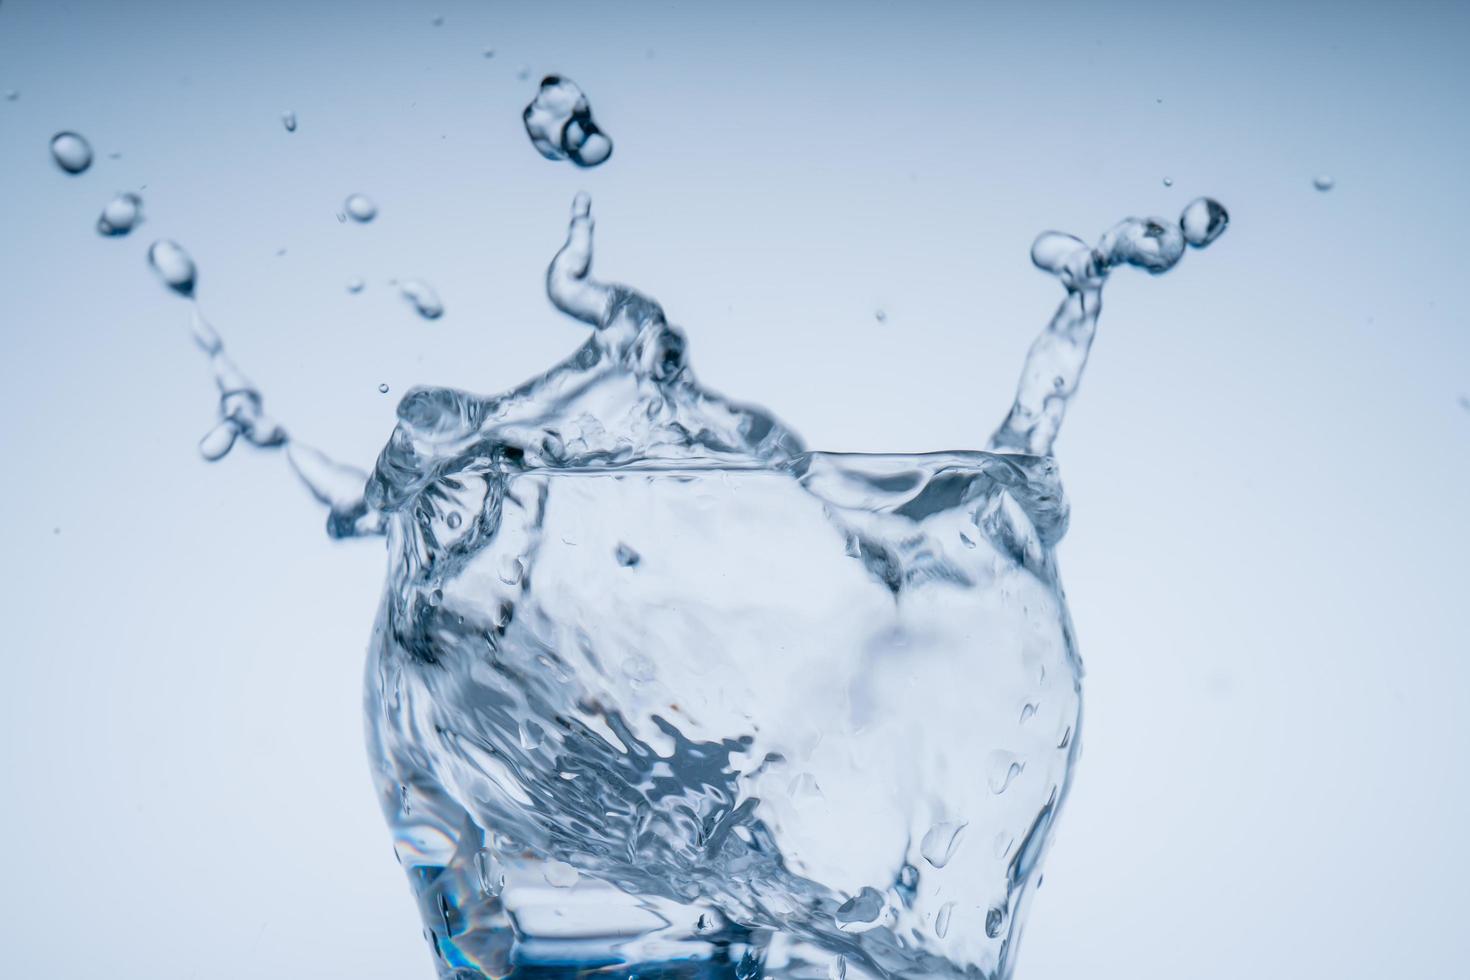 cubo de hielo cayó en el vaso de agua. agua salpicada del cristal transparente. concepto fresco foto